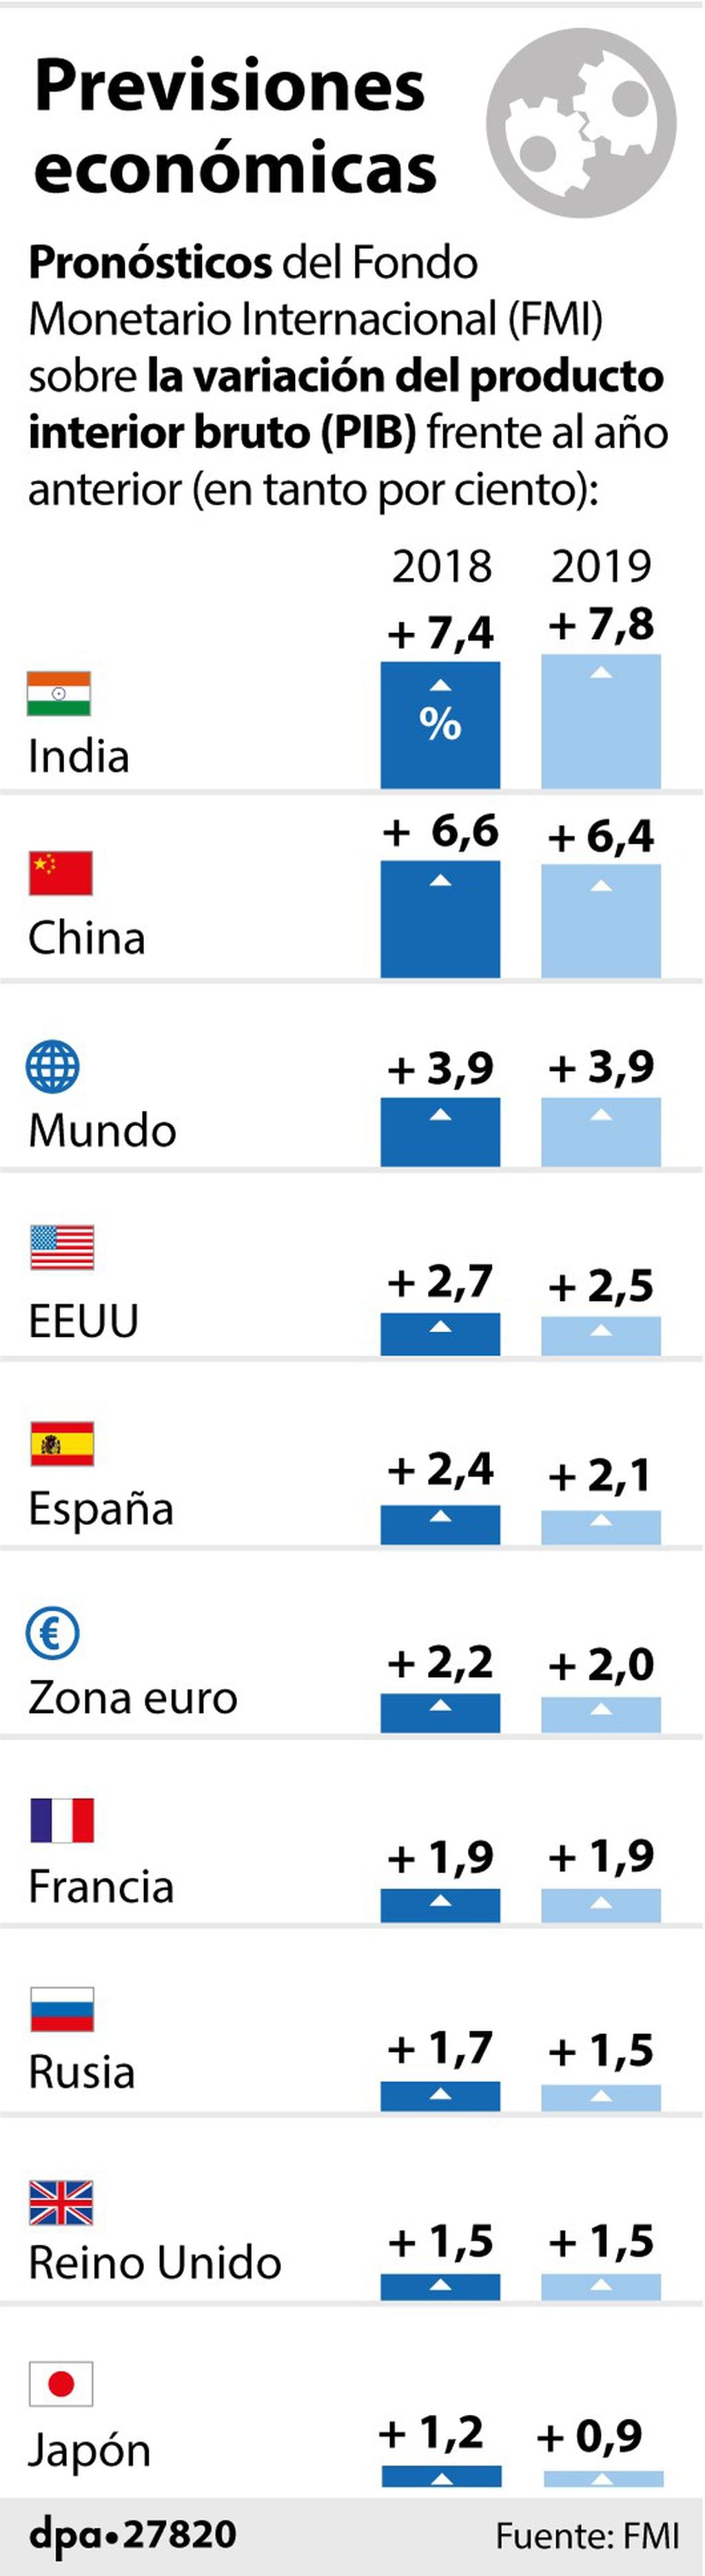 Diagrama de pronósticos económicos del FMI para algunos países